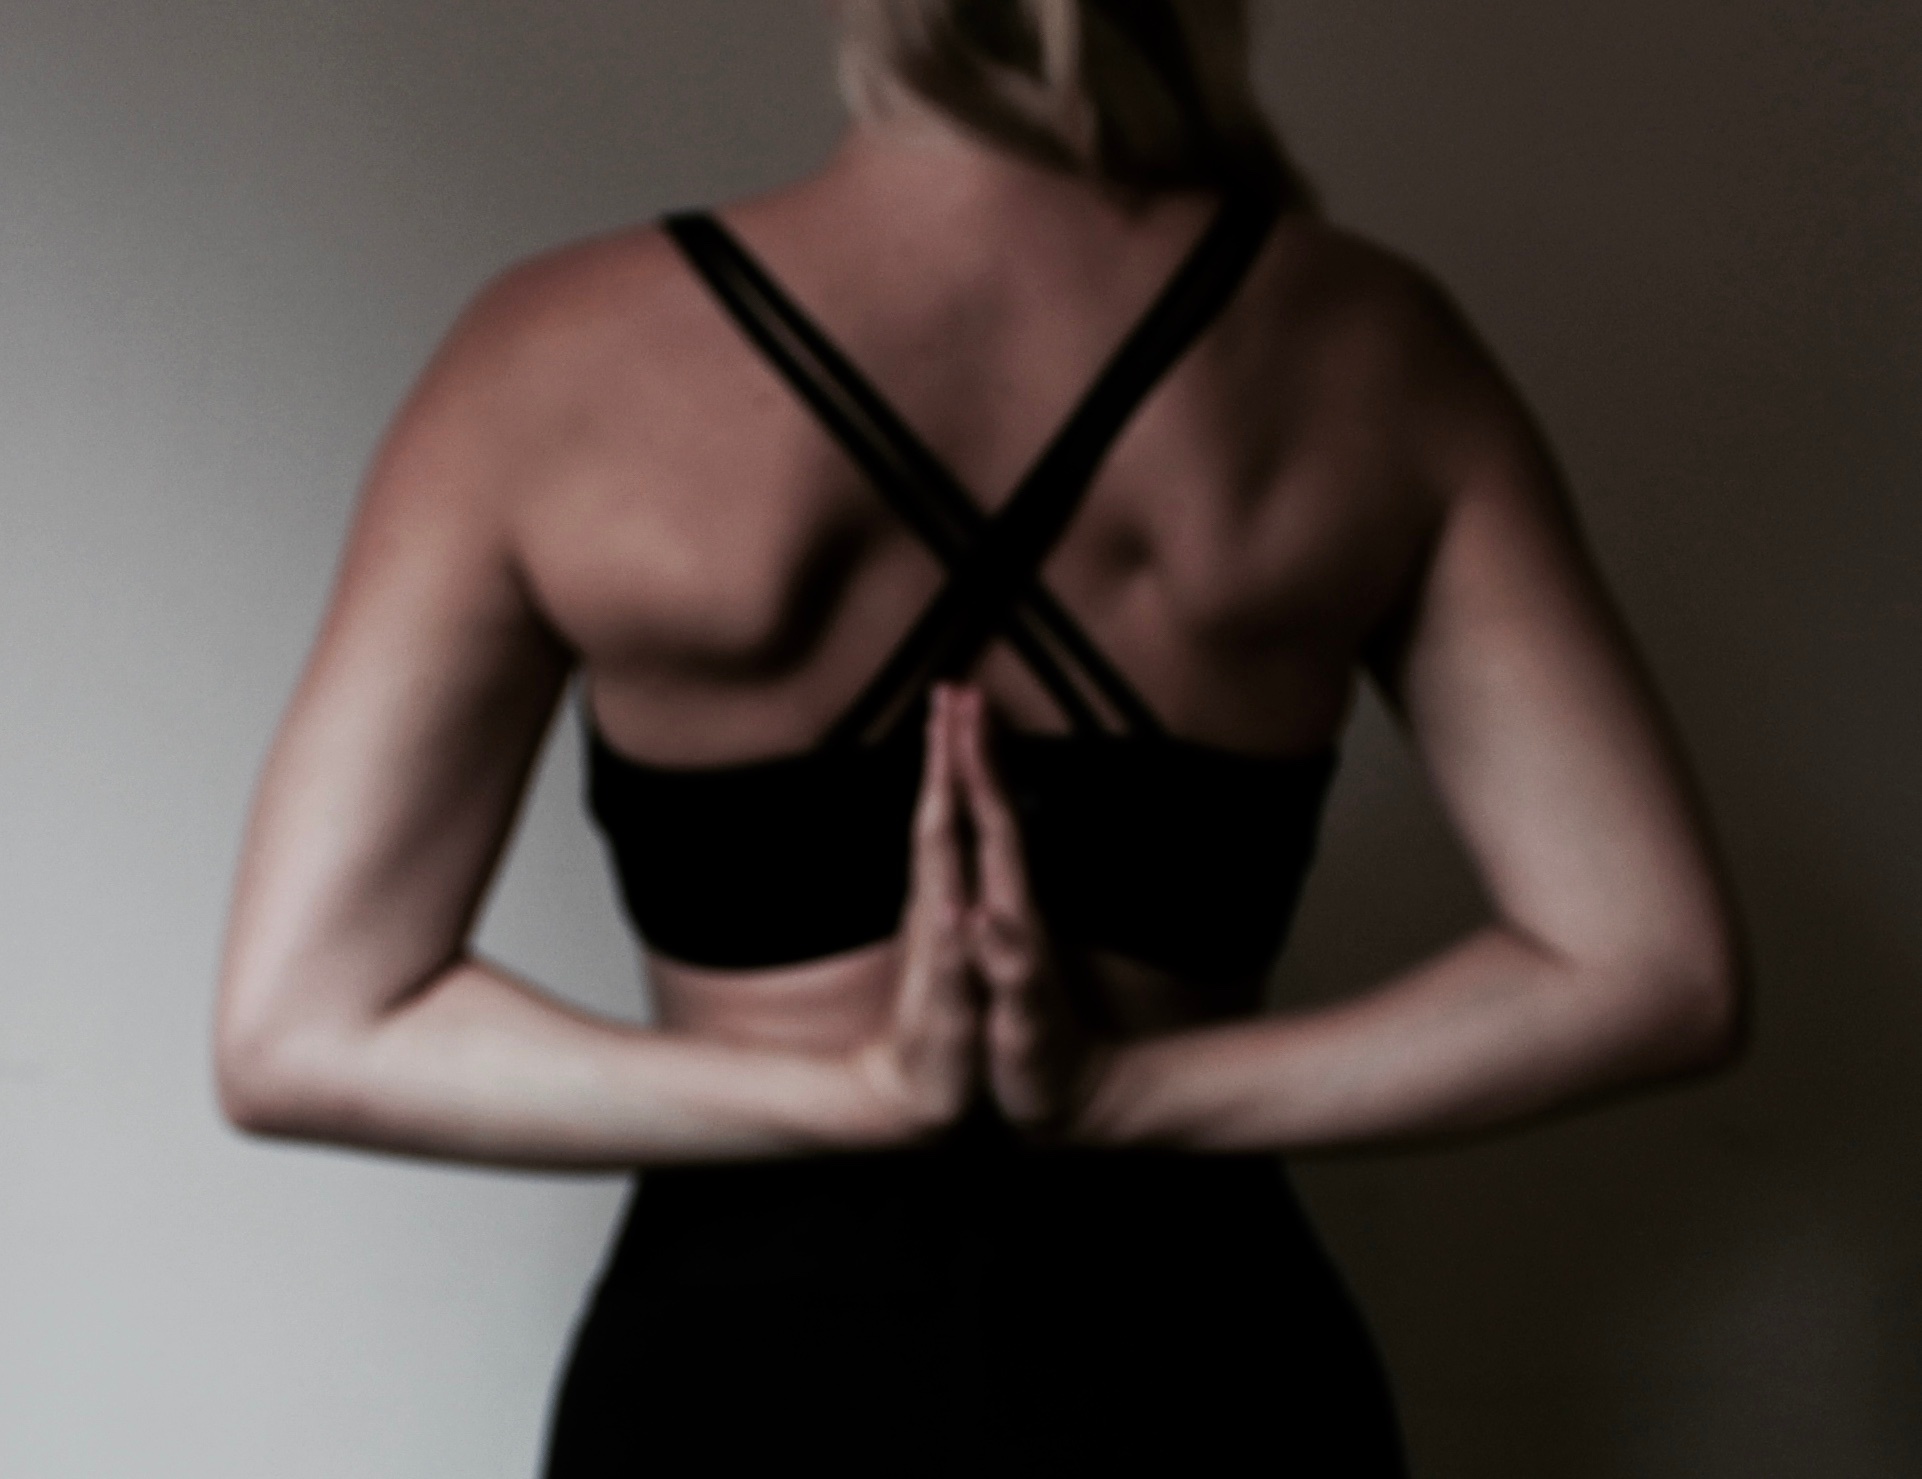 Yoga kan hjälpa vid ryggsmärtor